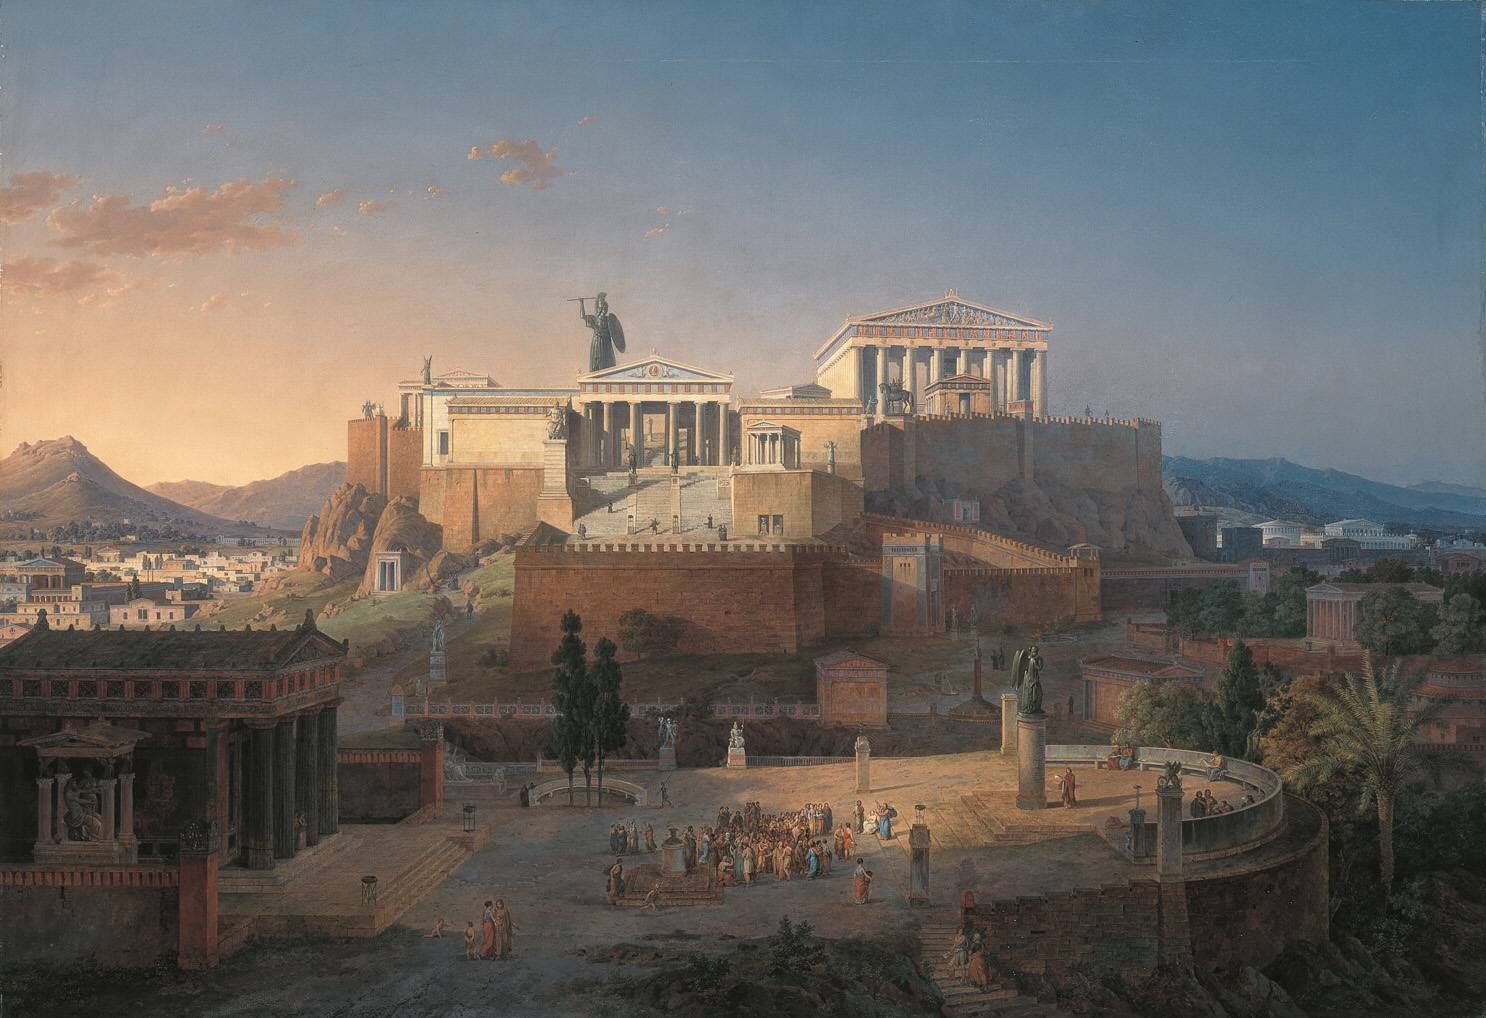 Representación imaginaria de la Acrópolis de Atenas, realizada por el artista alemán Leo von Klenze en 1846.